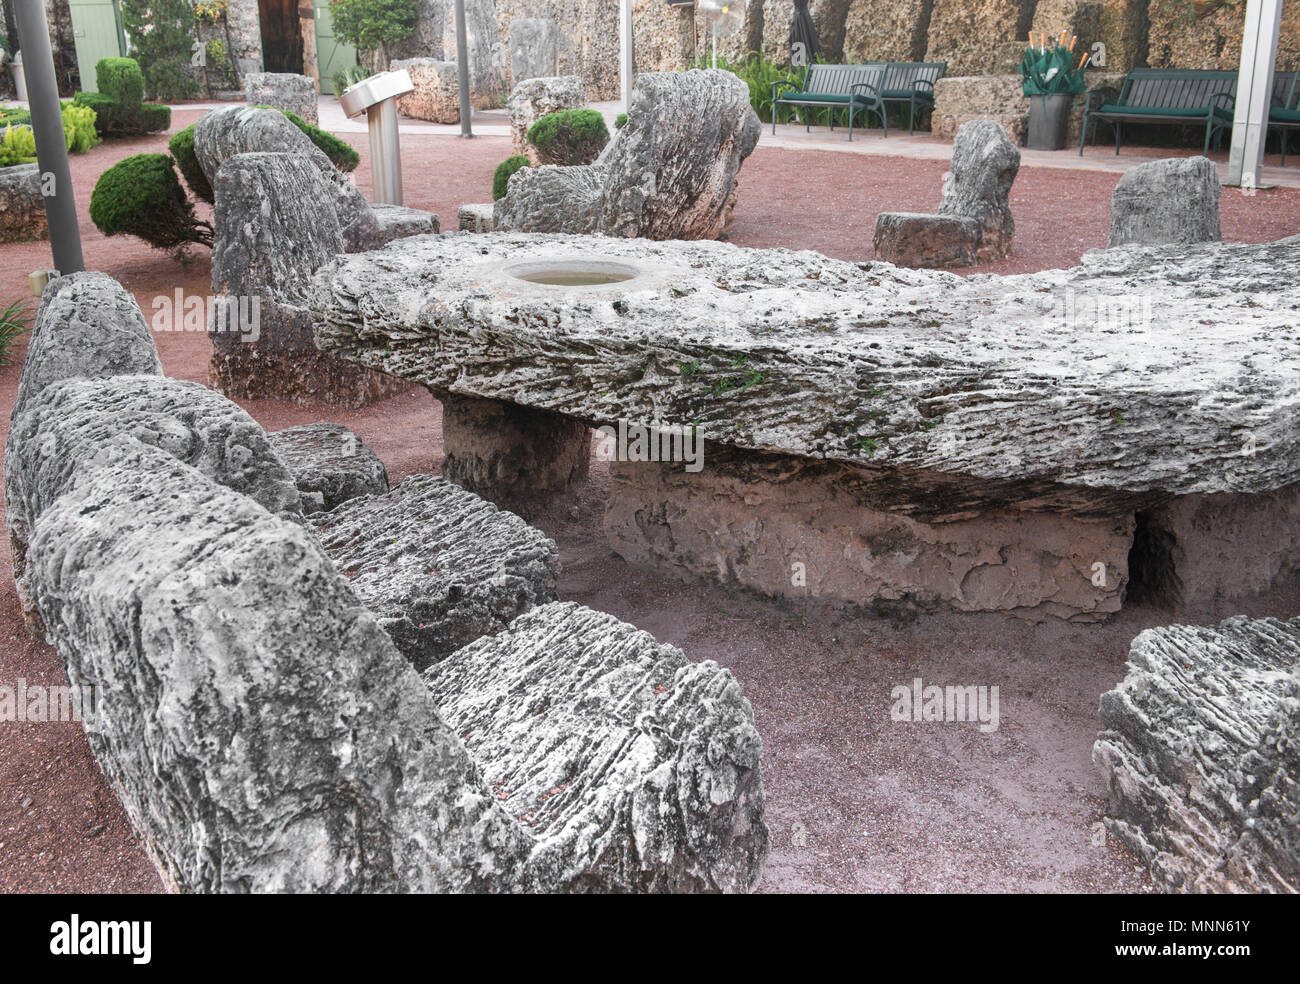 Coral Castle Tabelle wie Florida geprägt. See Okeechobee wird durch die Depression gewollt mit Wasser auf den Tisch vertreten. Stein wippen Surround Tabelle. Stockfoto